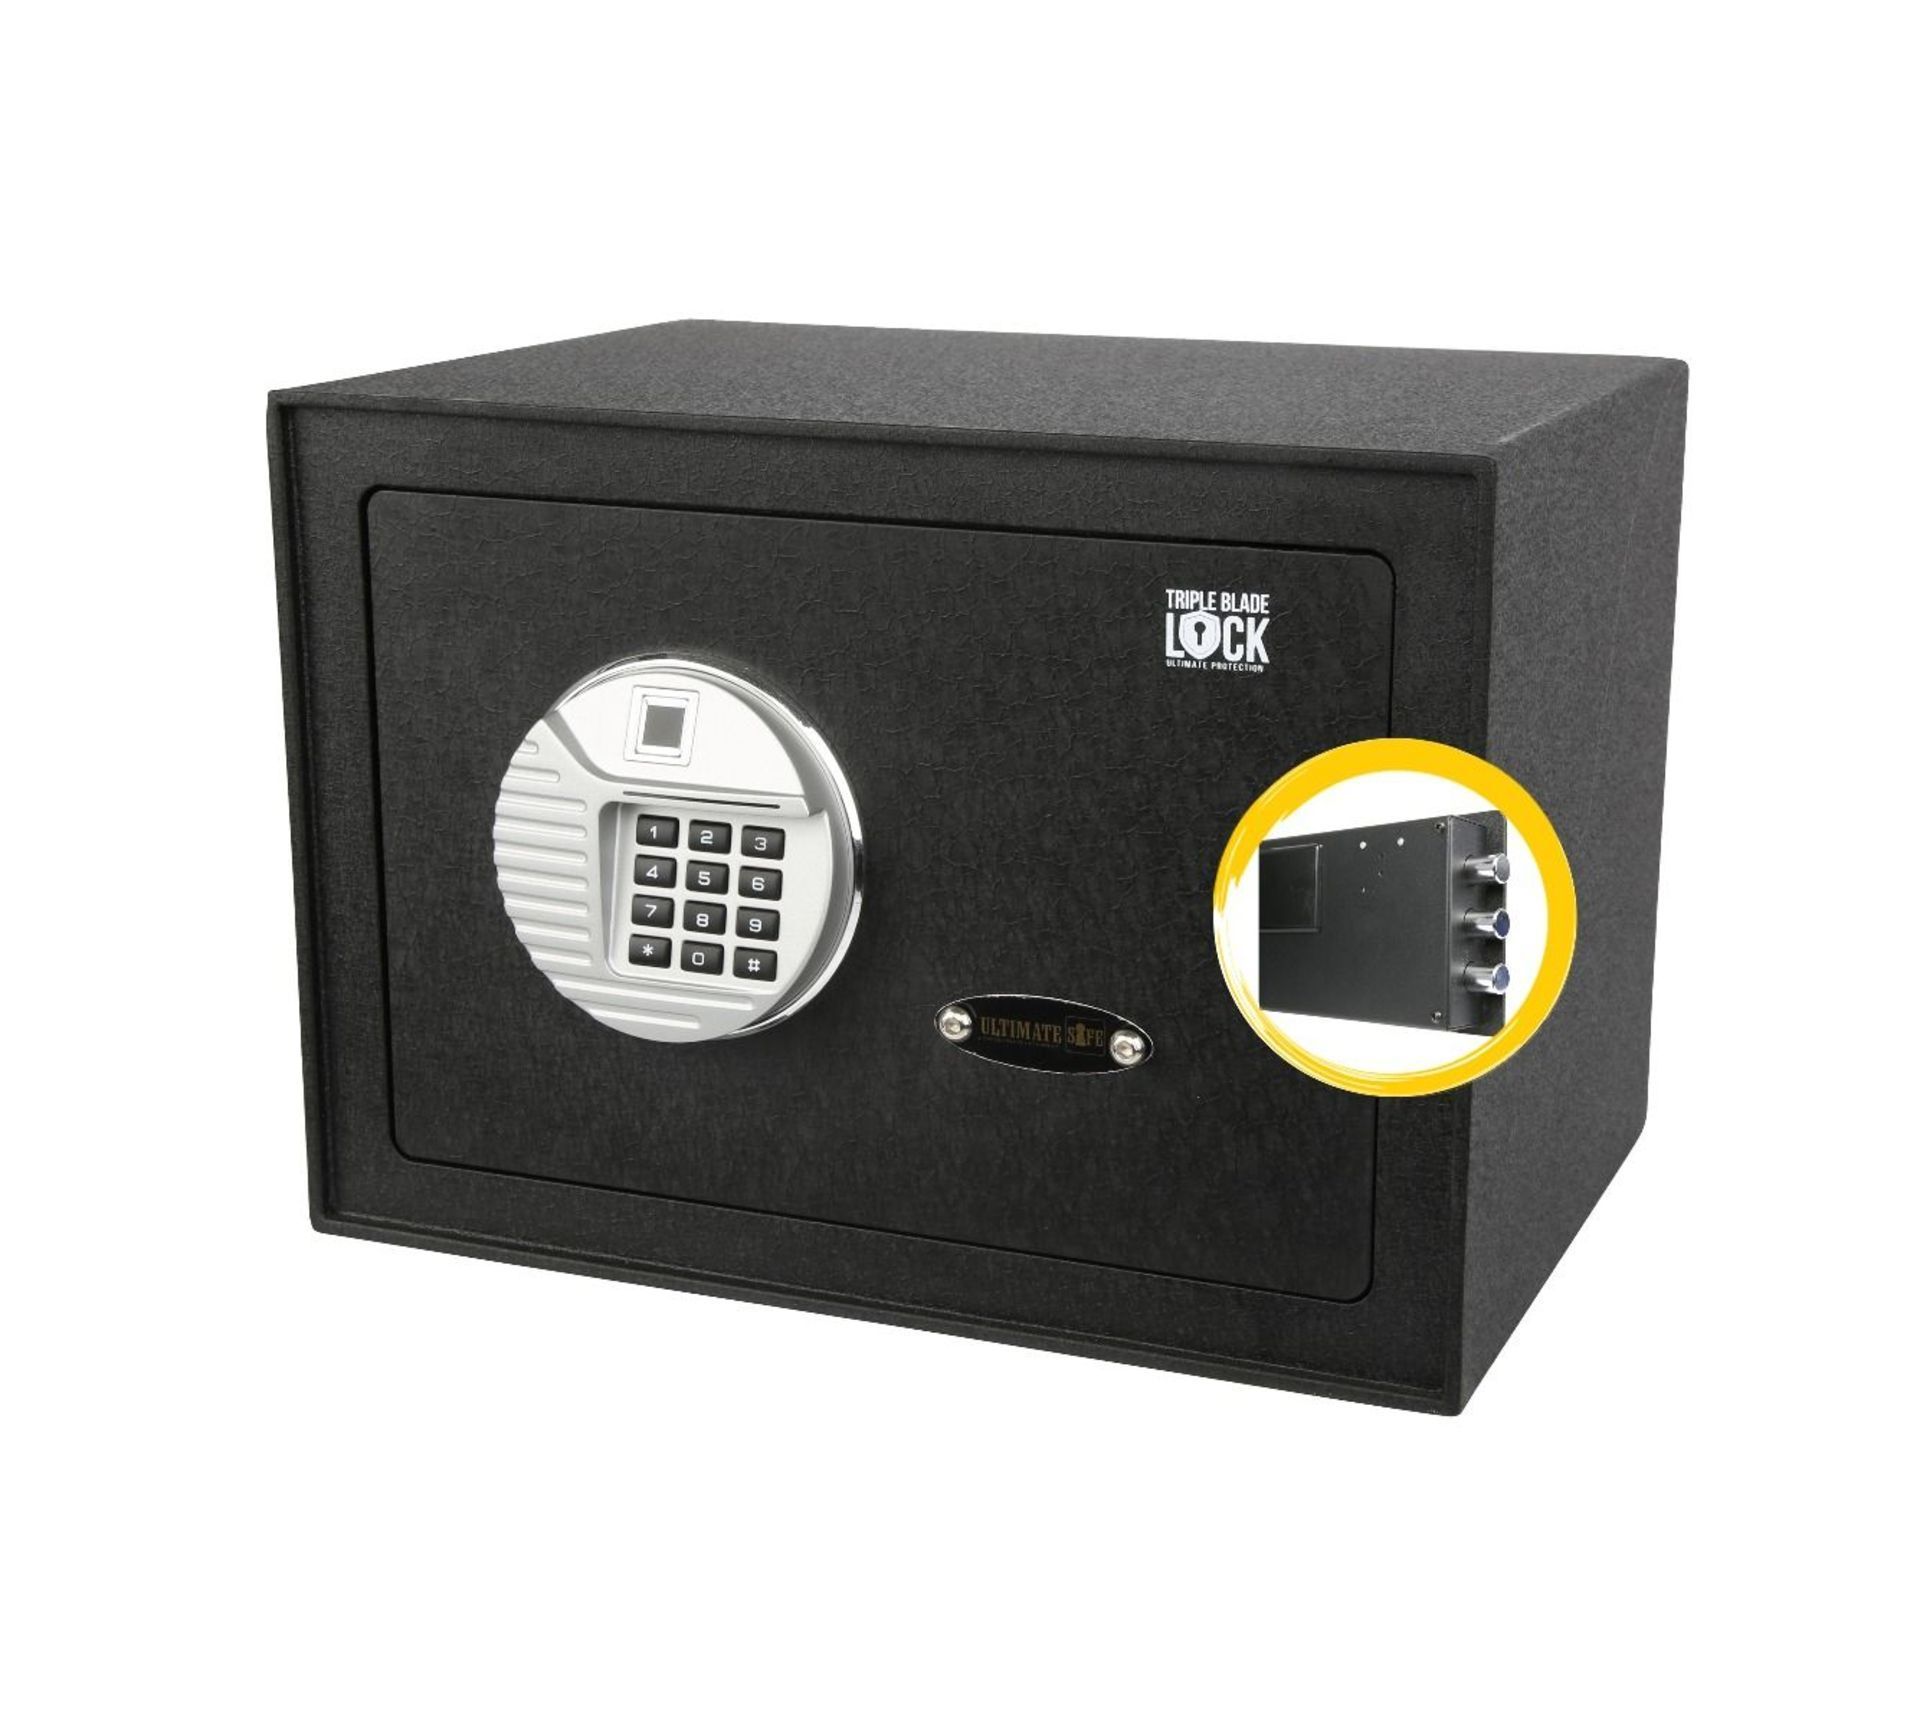 TRADE LOT 8 New & Boxed Ultimate Safe® 25BIOM Digital Home Safe with Fingerprint Lock (16L).